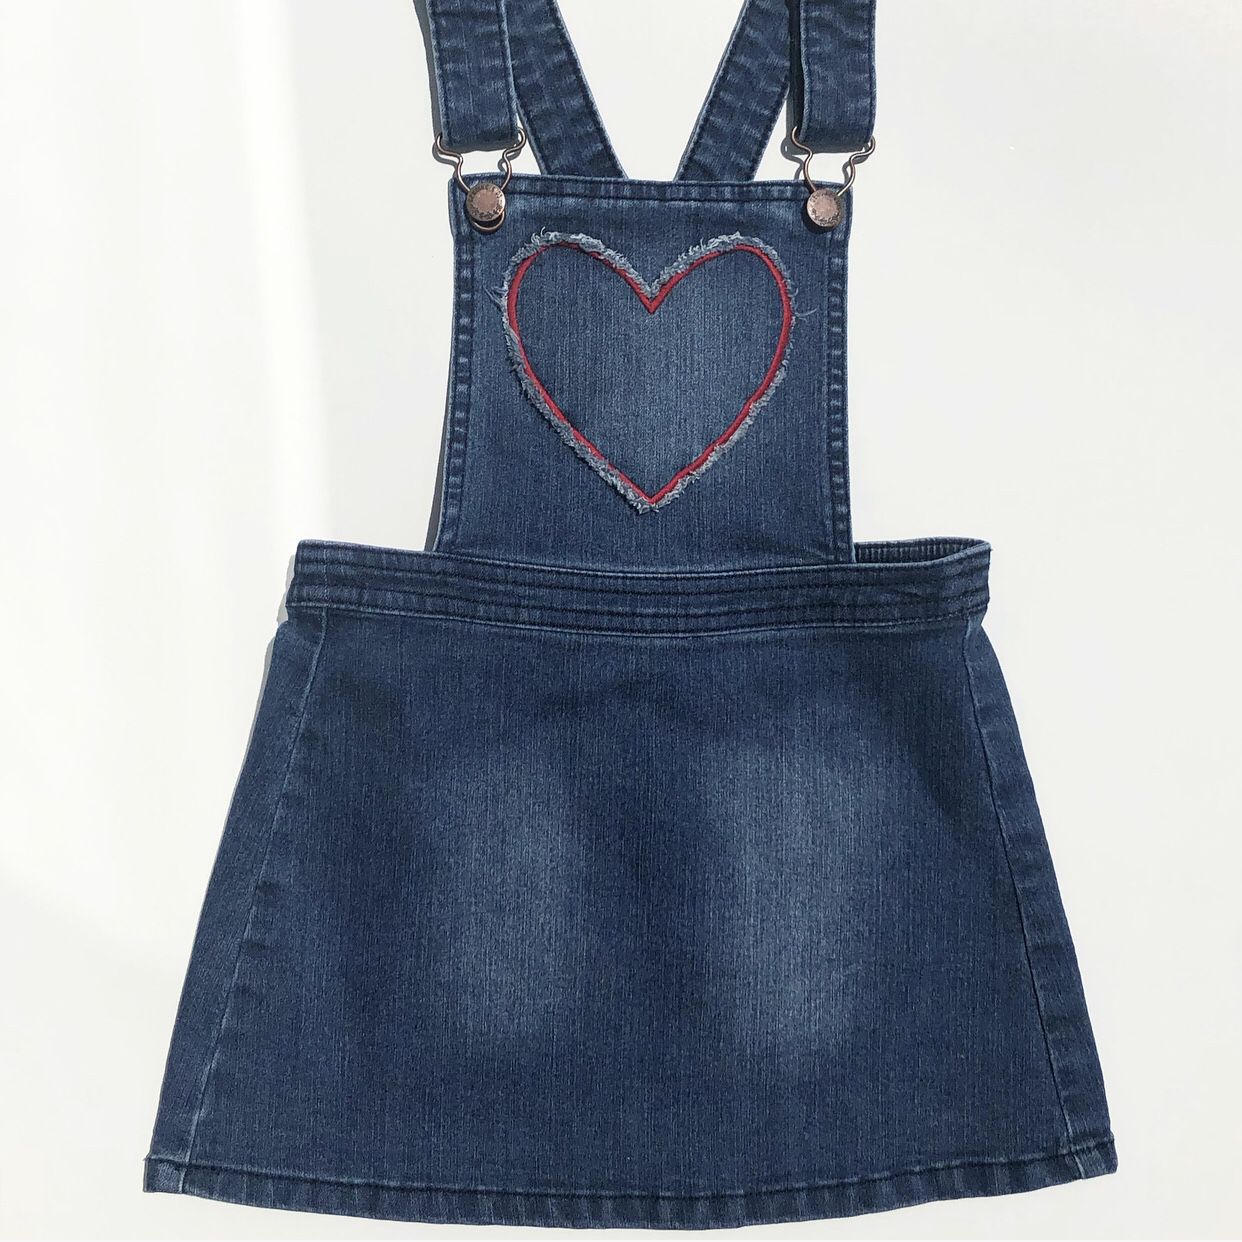 Oshkosh B’Gosh Denim Heart Overall Jumper Dress